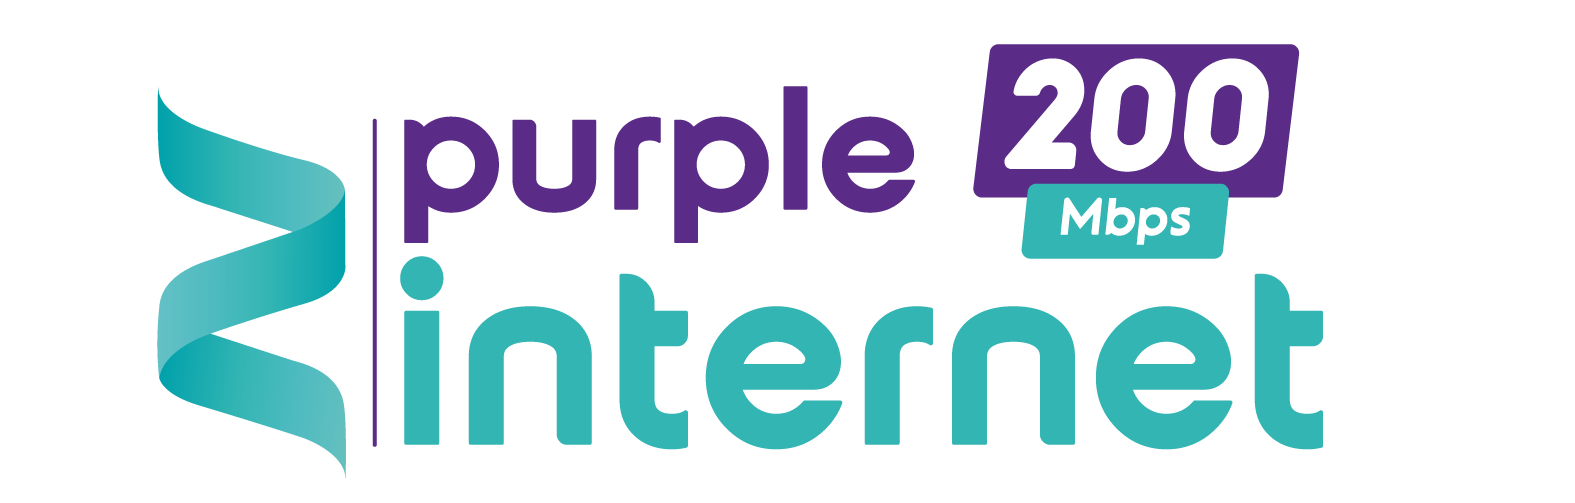 Purple Internet 200M (24 Months)